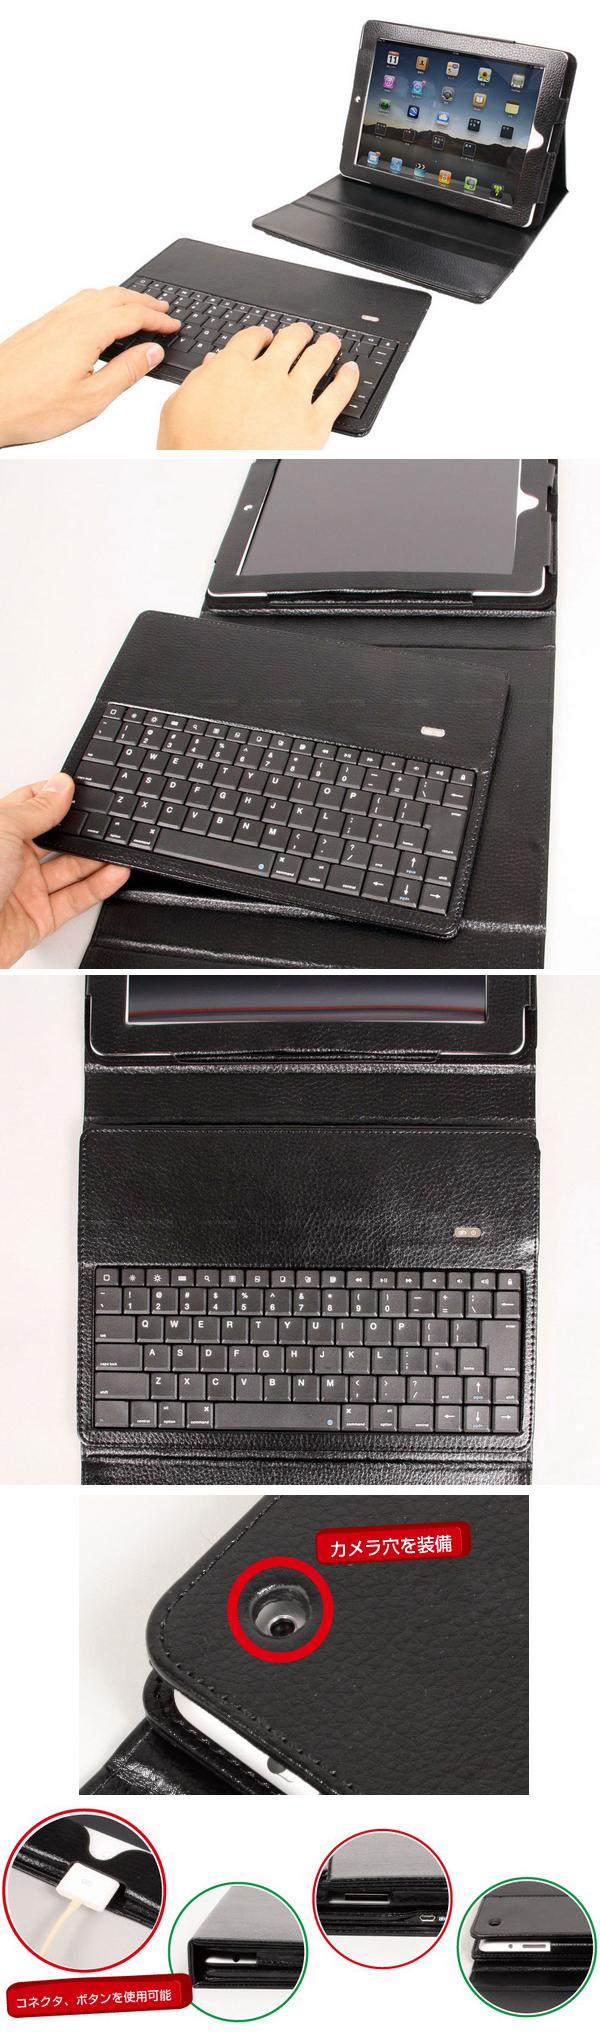 Чехол с беспроводной клавиатурой для iPad2 от «Thanko»